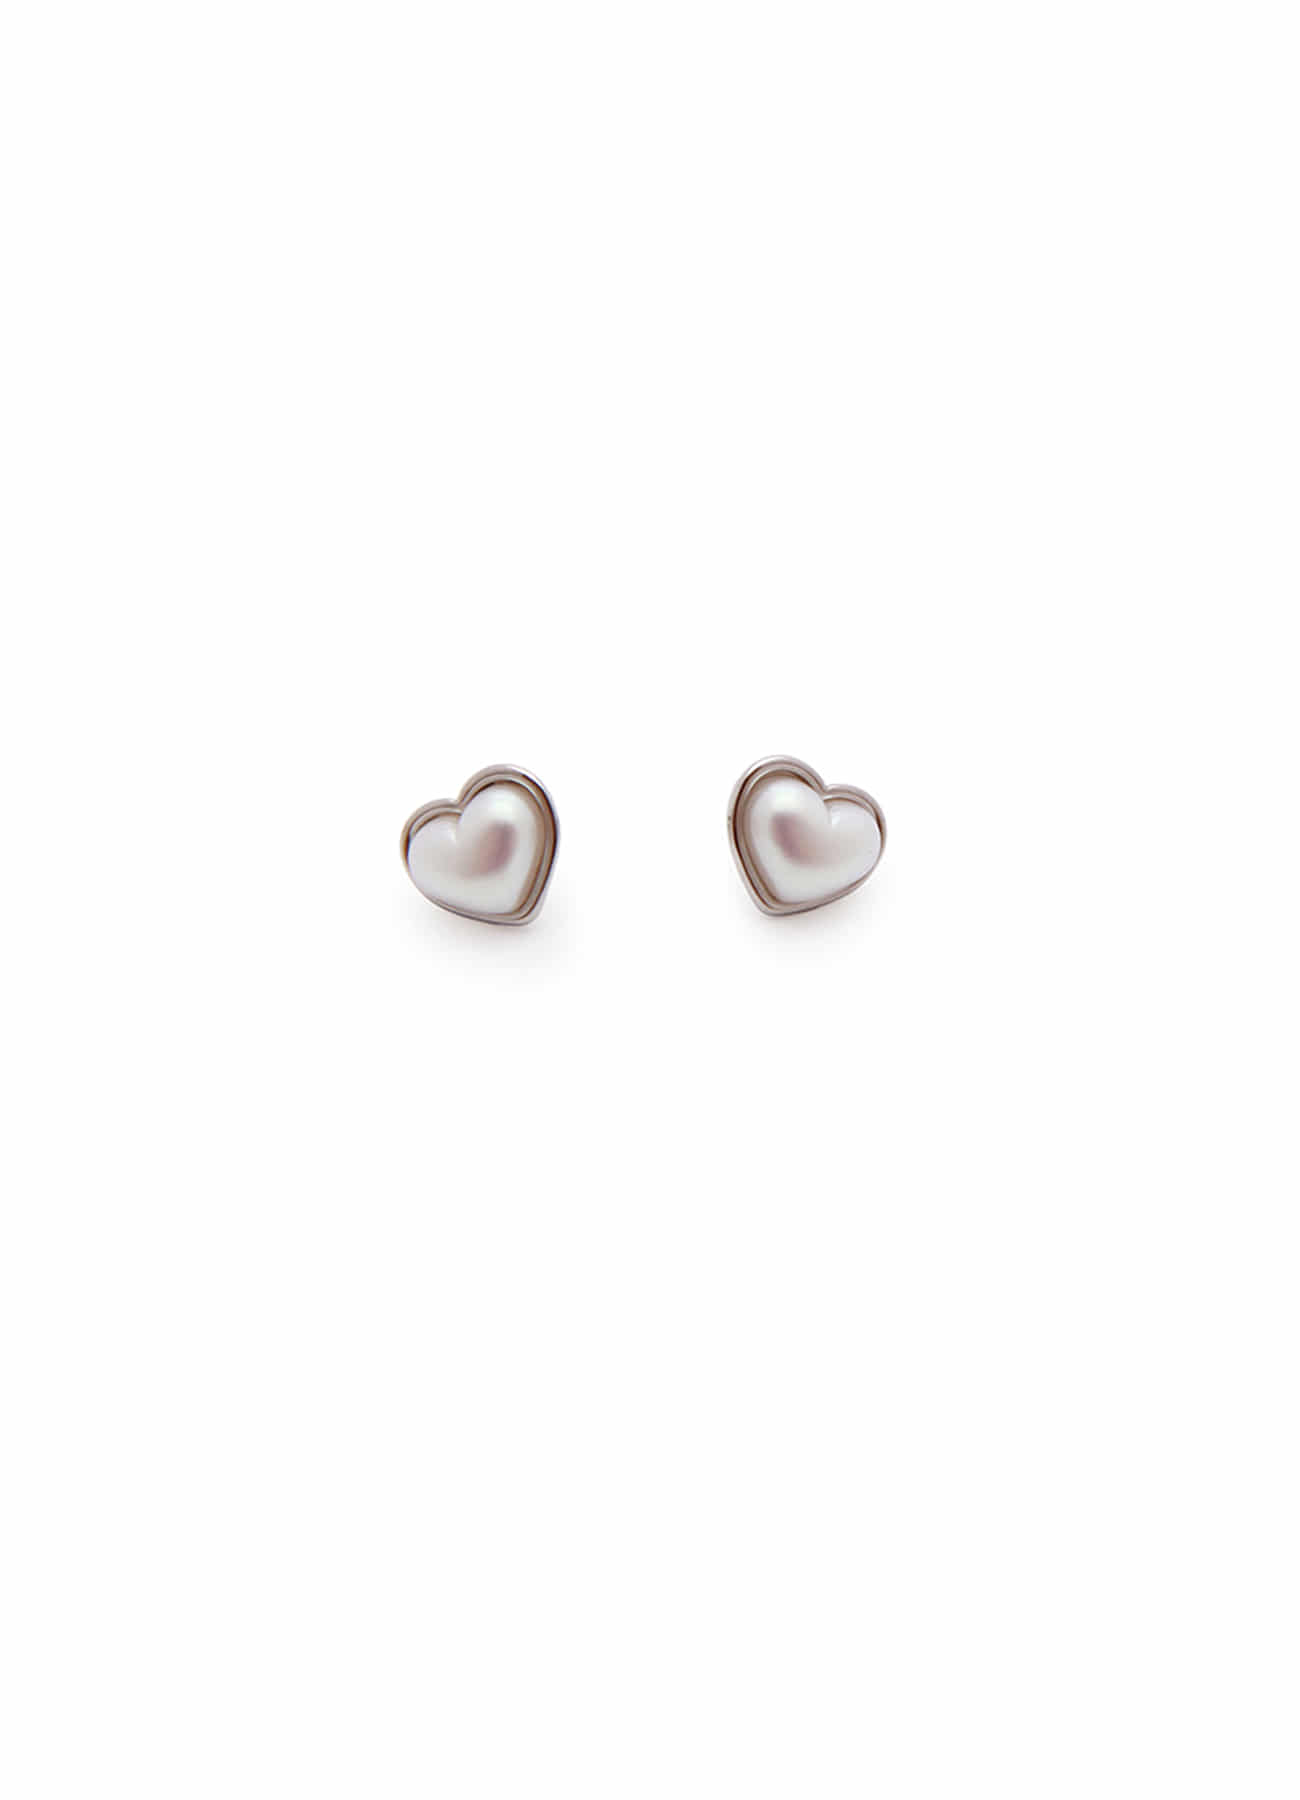 adorable pearl Earrings